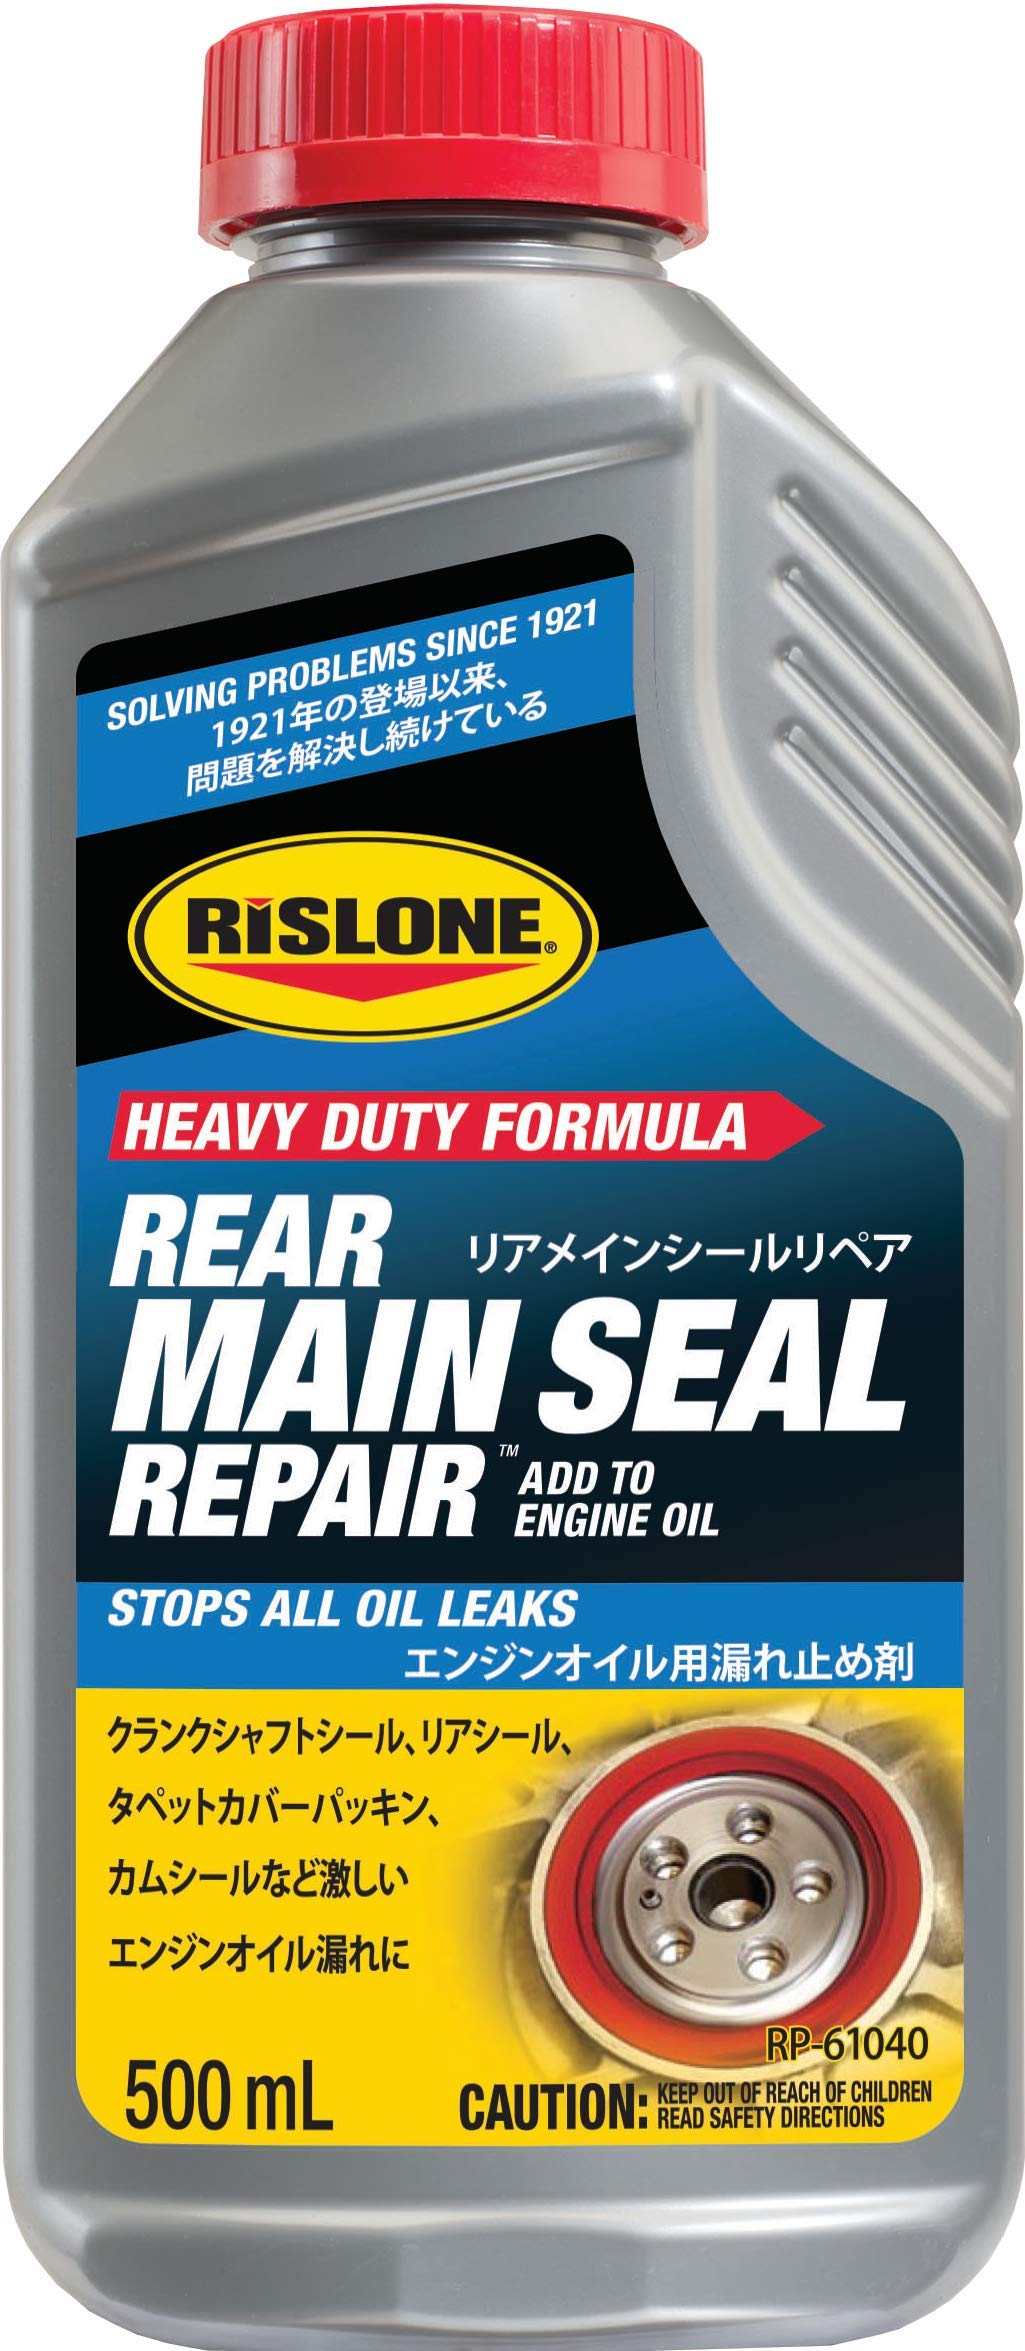 RISLONE(リスローン) リアメインシールリペア(Rear Main Seal Repair Concentrate) RP-61040